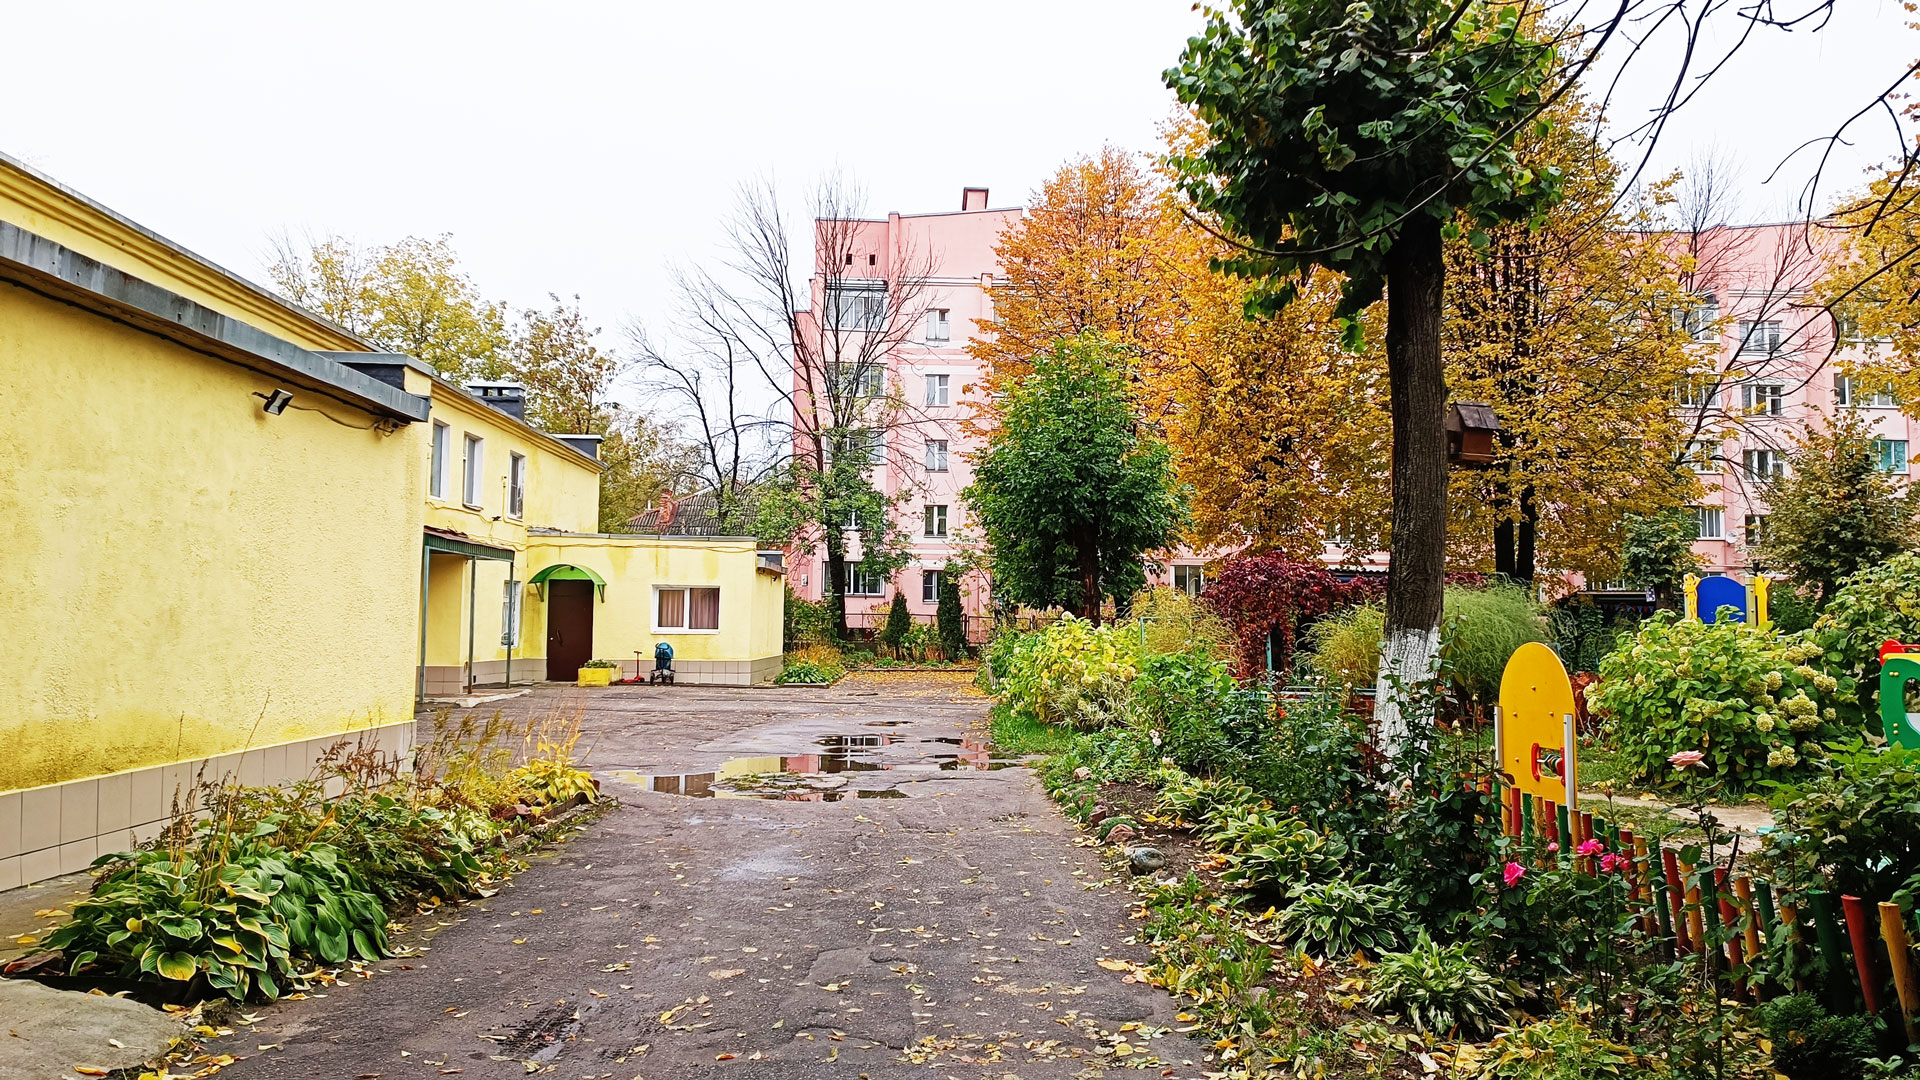 Детский сад 190 Ярославль: общий вид территории и здания.